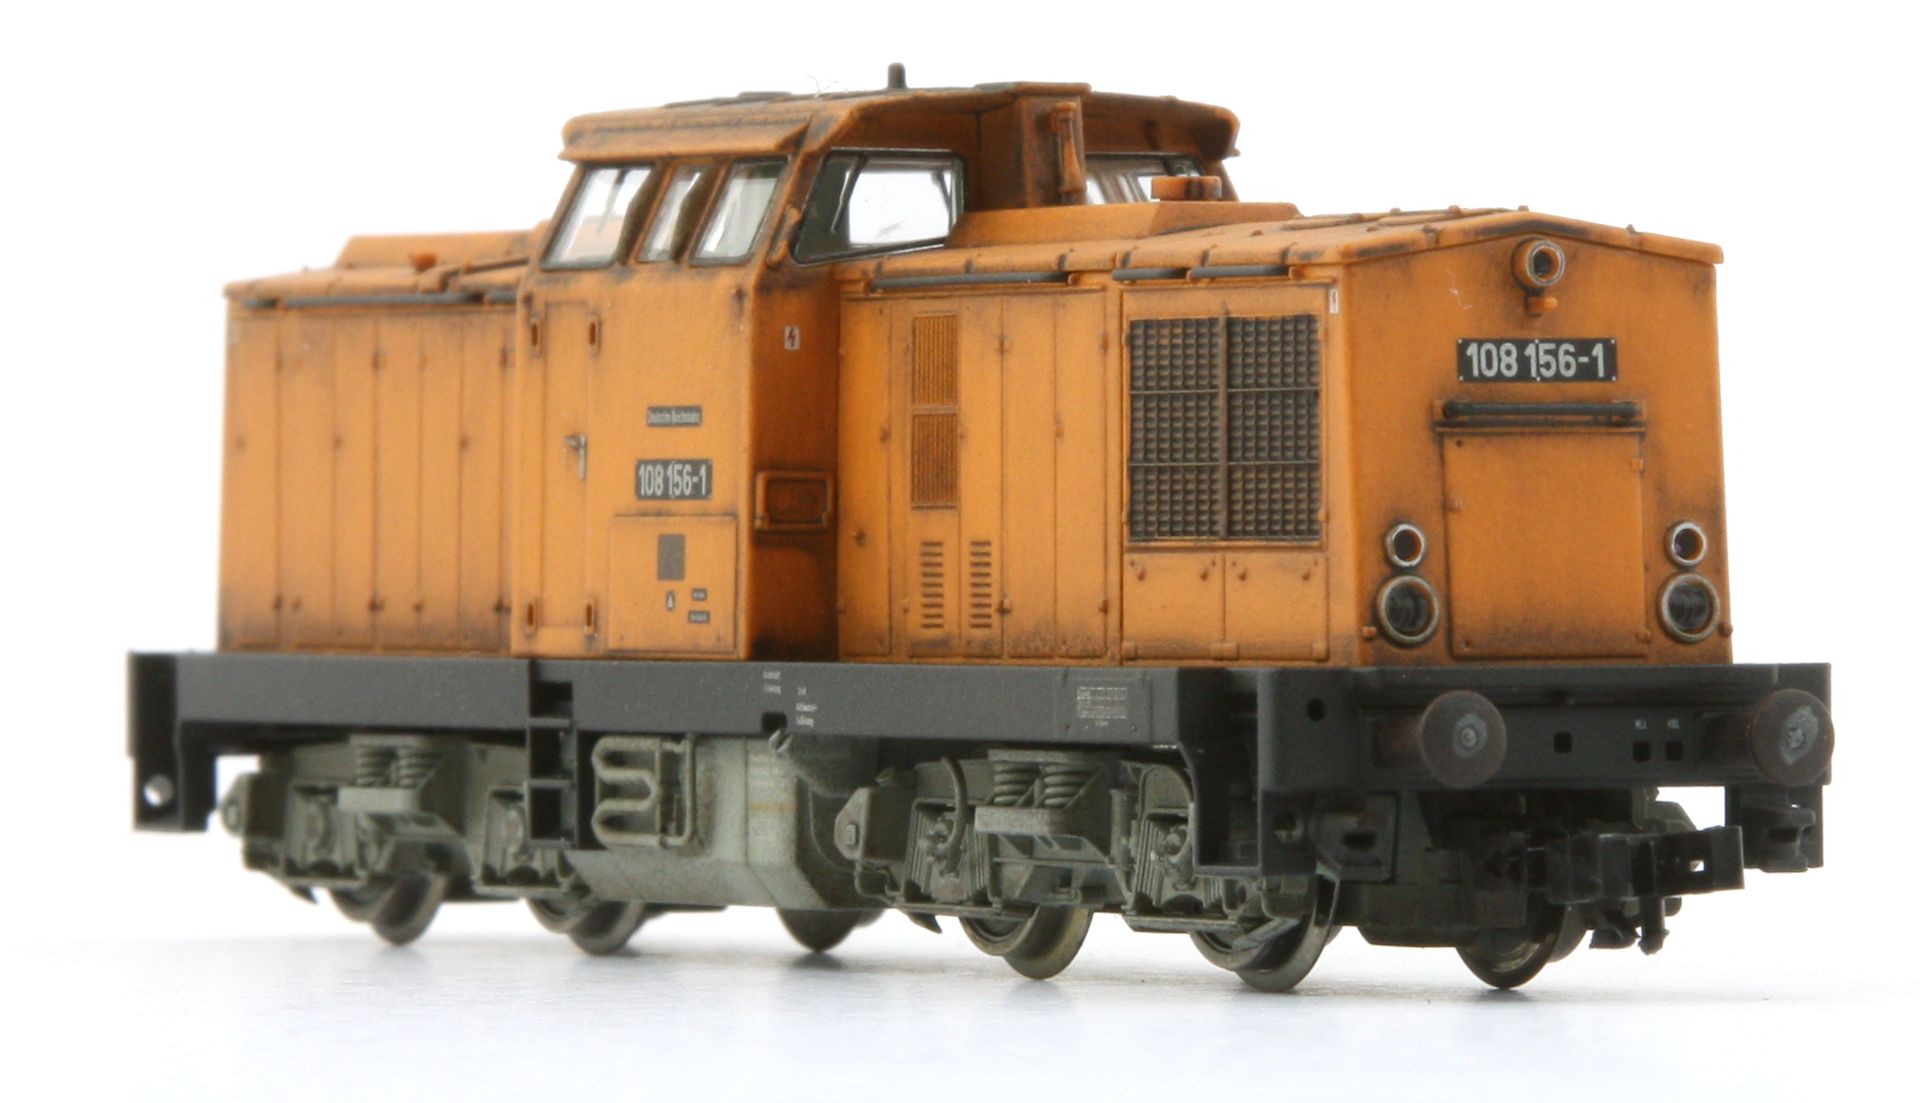 Saxonia 120099 - Diesellok 108 156-1, DR, Ep.IV, DC-Sound, gealtert